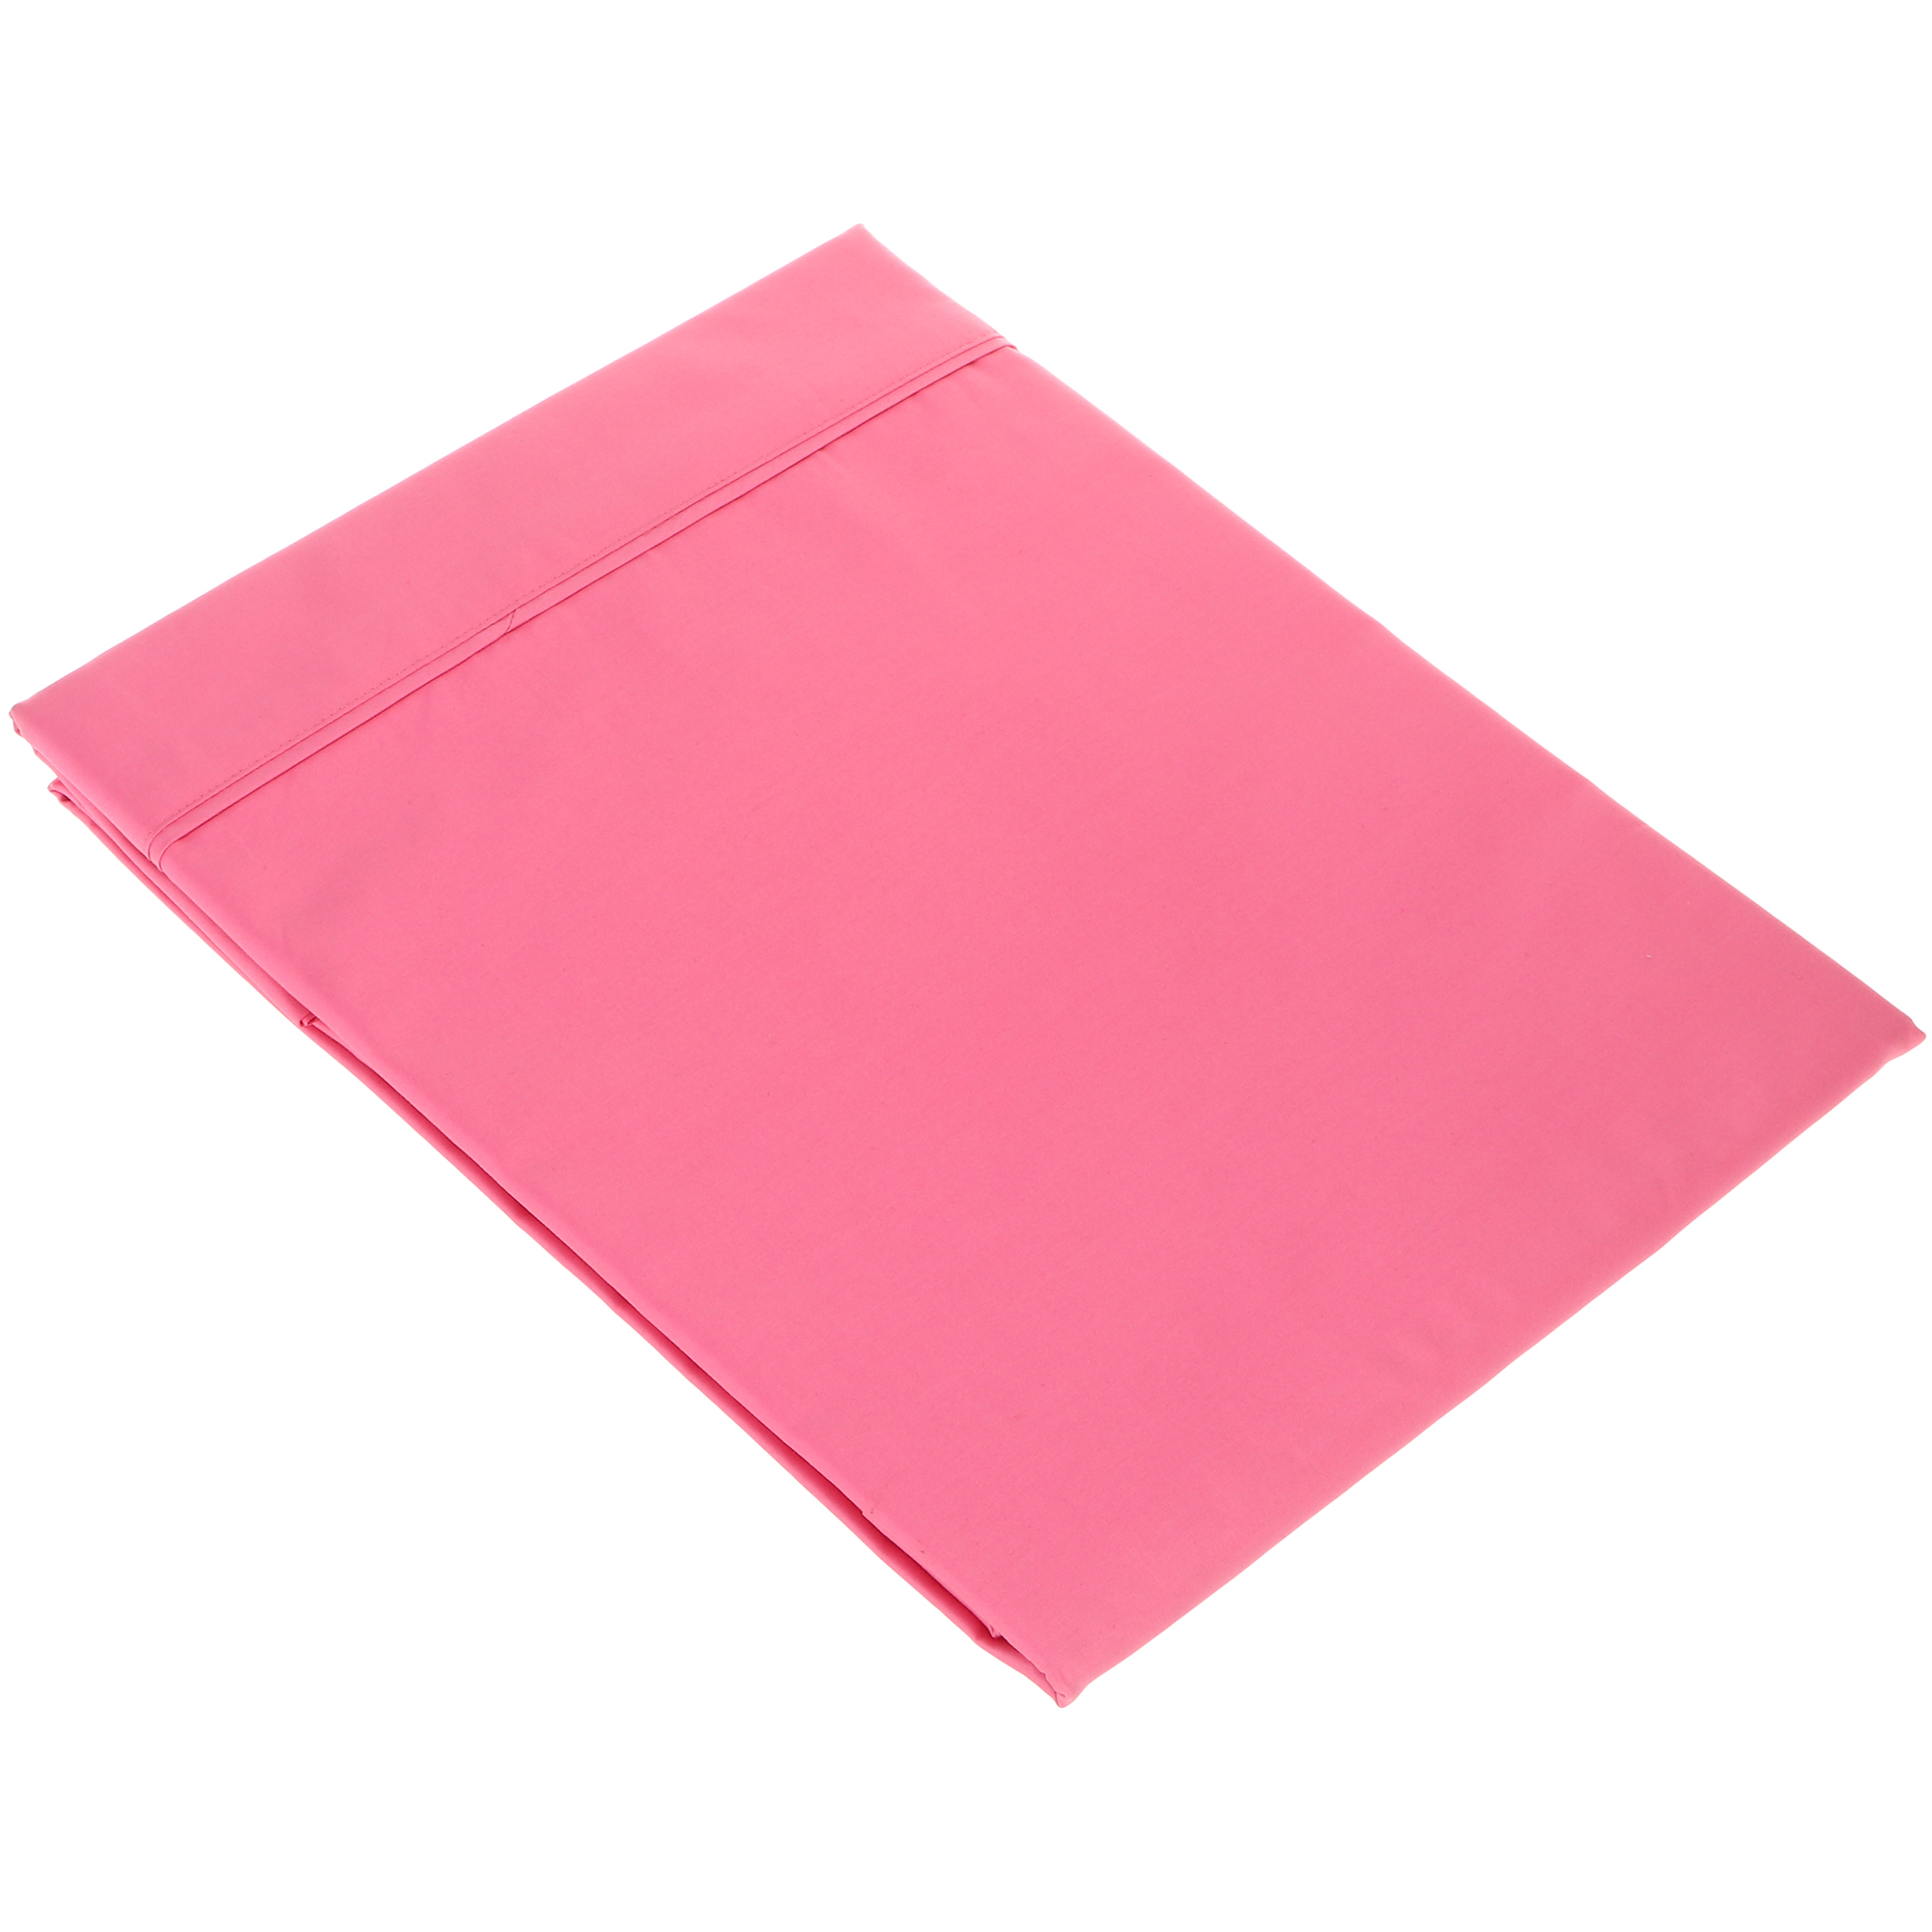 Простыня Вонне-траум Chambord Love розовая 180х250 см сумка шопер i love you 35 х 0 5 х 40 см вышивка розовый